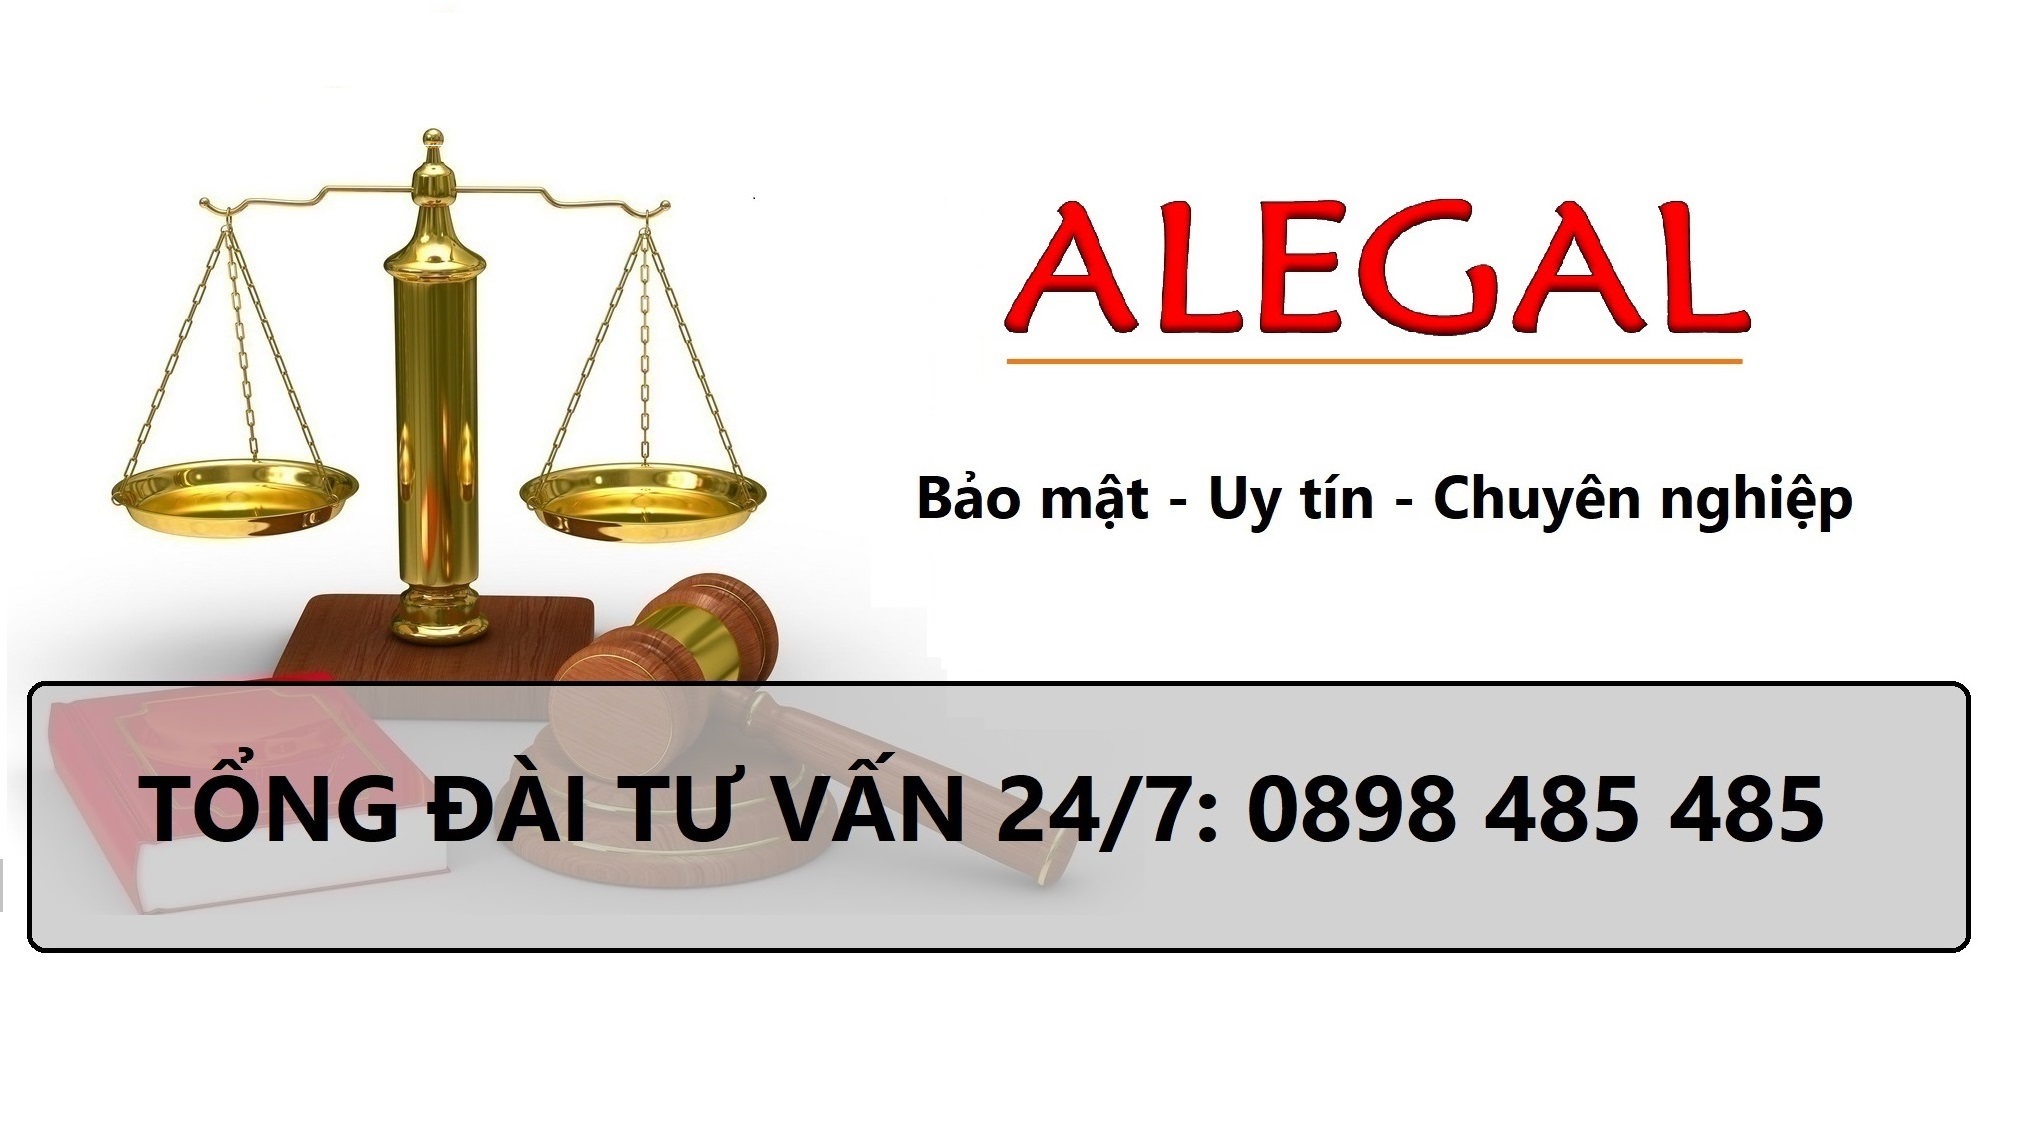 Hãng luật Alegal bảo vệ miễn phí người lao động bị sa thải trái pháp luật